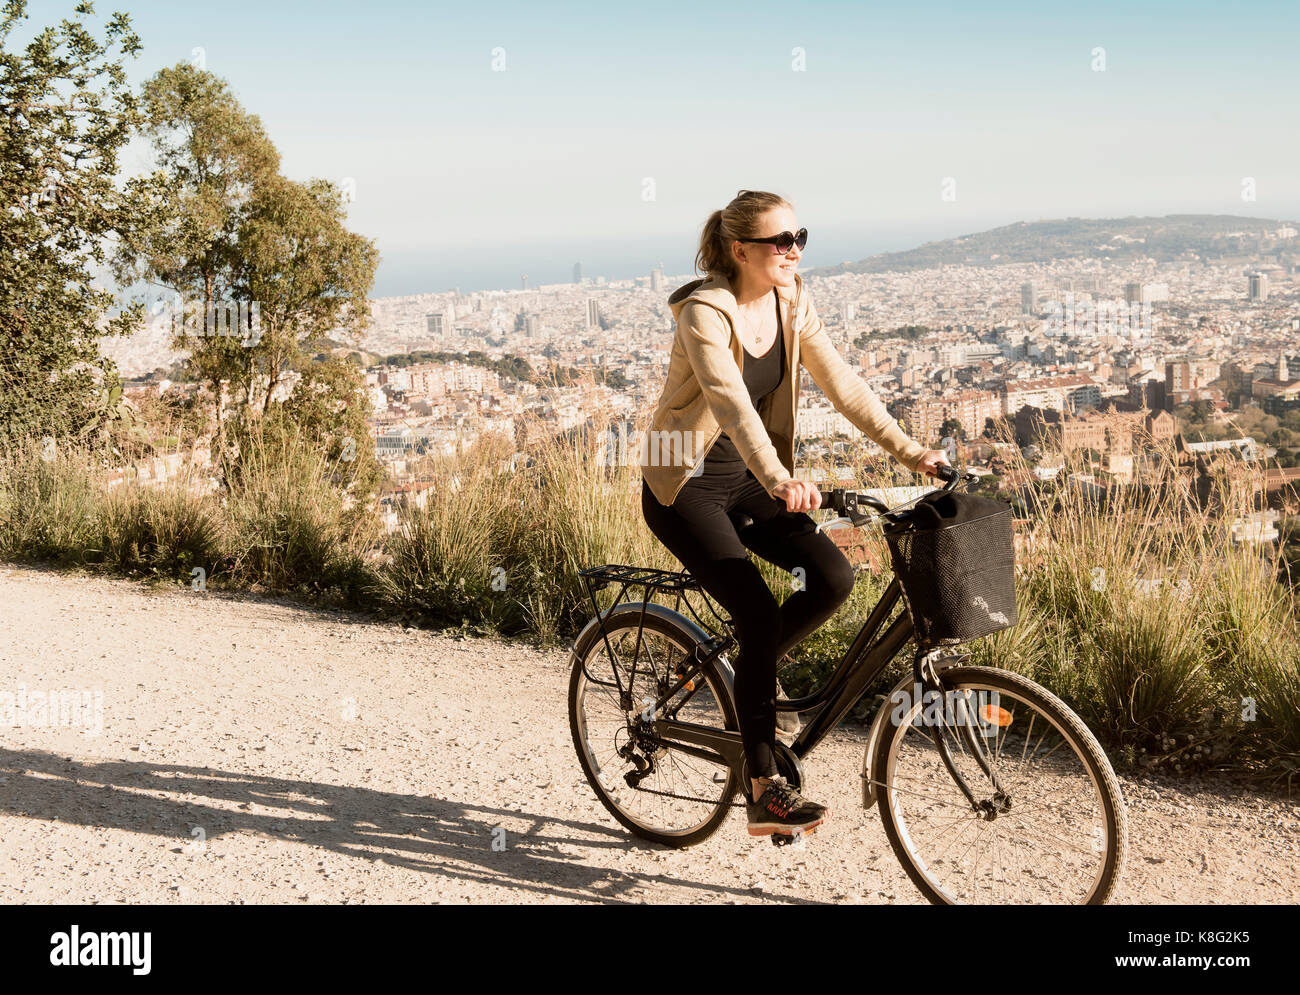 Frau Sightseeing auf dem Fahrrad, Stadt im Hintergrund, Barcelona, Katalonien, Spanien Stockfoto